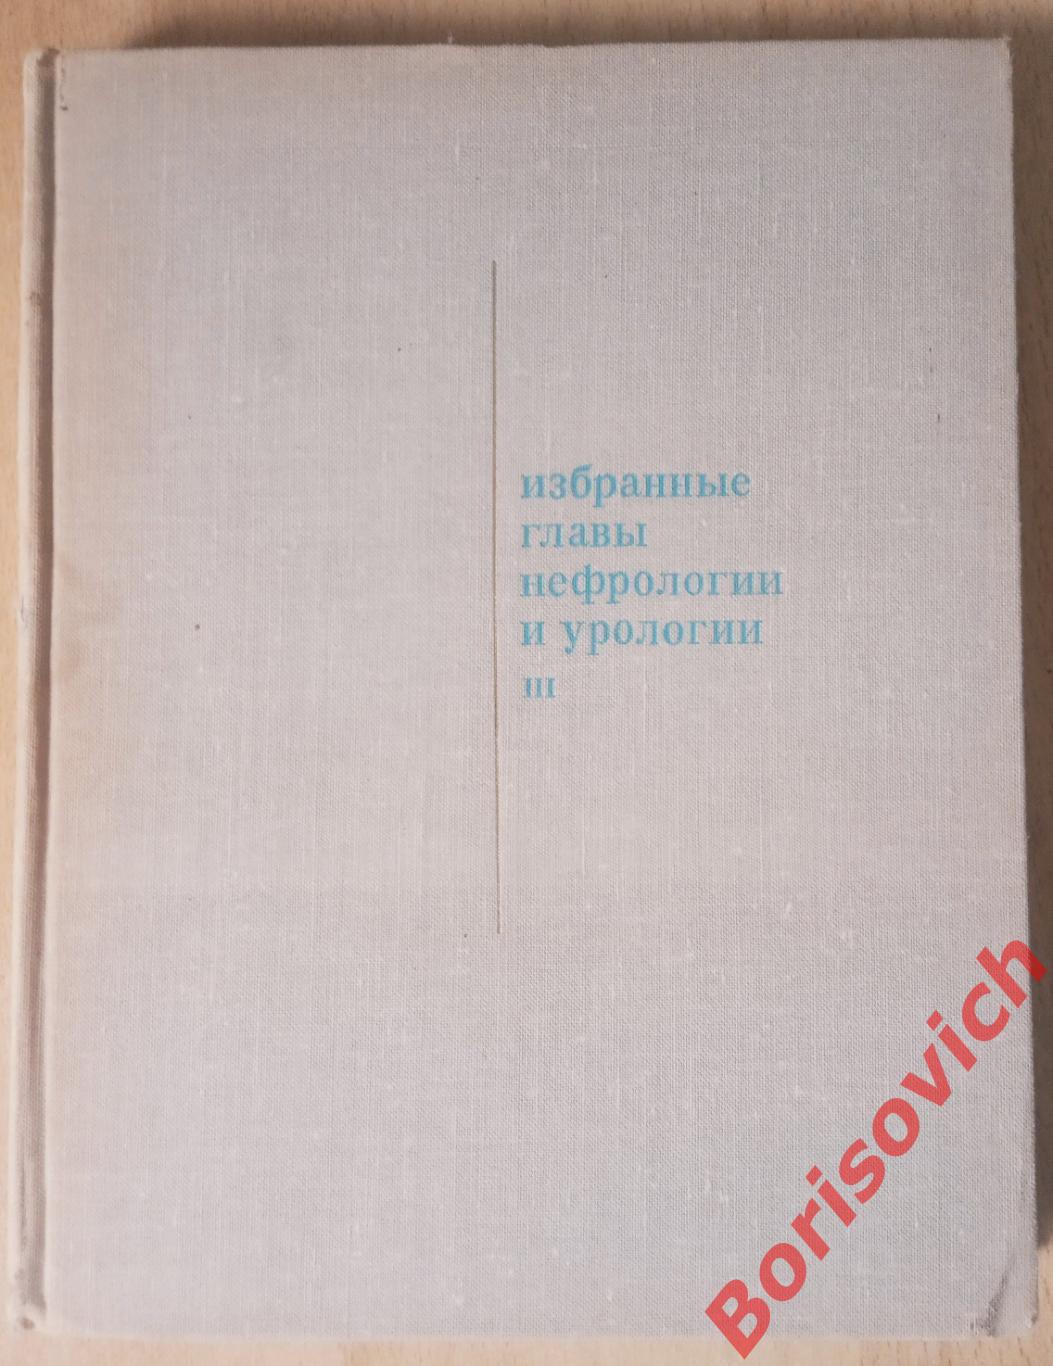 ИЗБРАННЫЕ ГЛАВЫ НЕФРОЛОГИИ И УРОЛОГИИ III 1973 г 304 страницы Тираж 15 000 экз